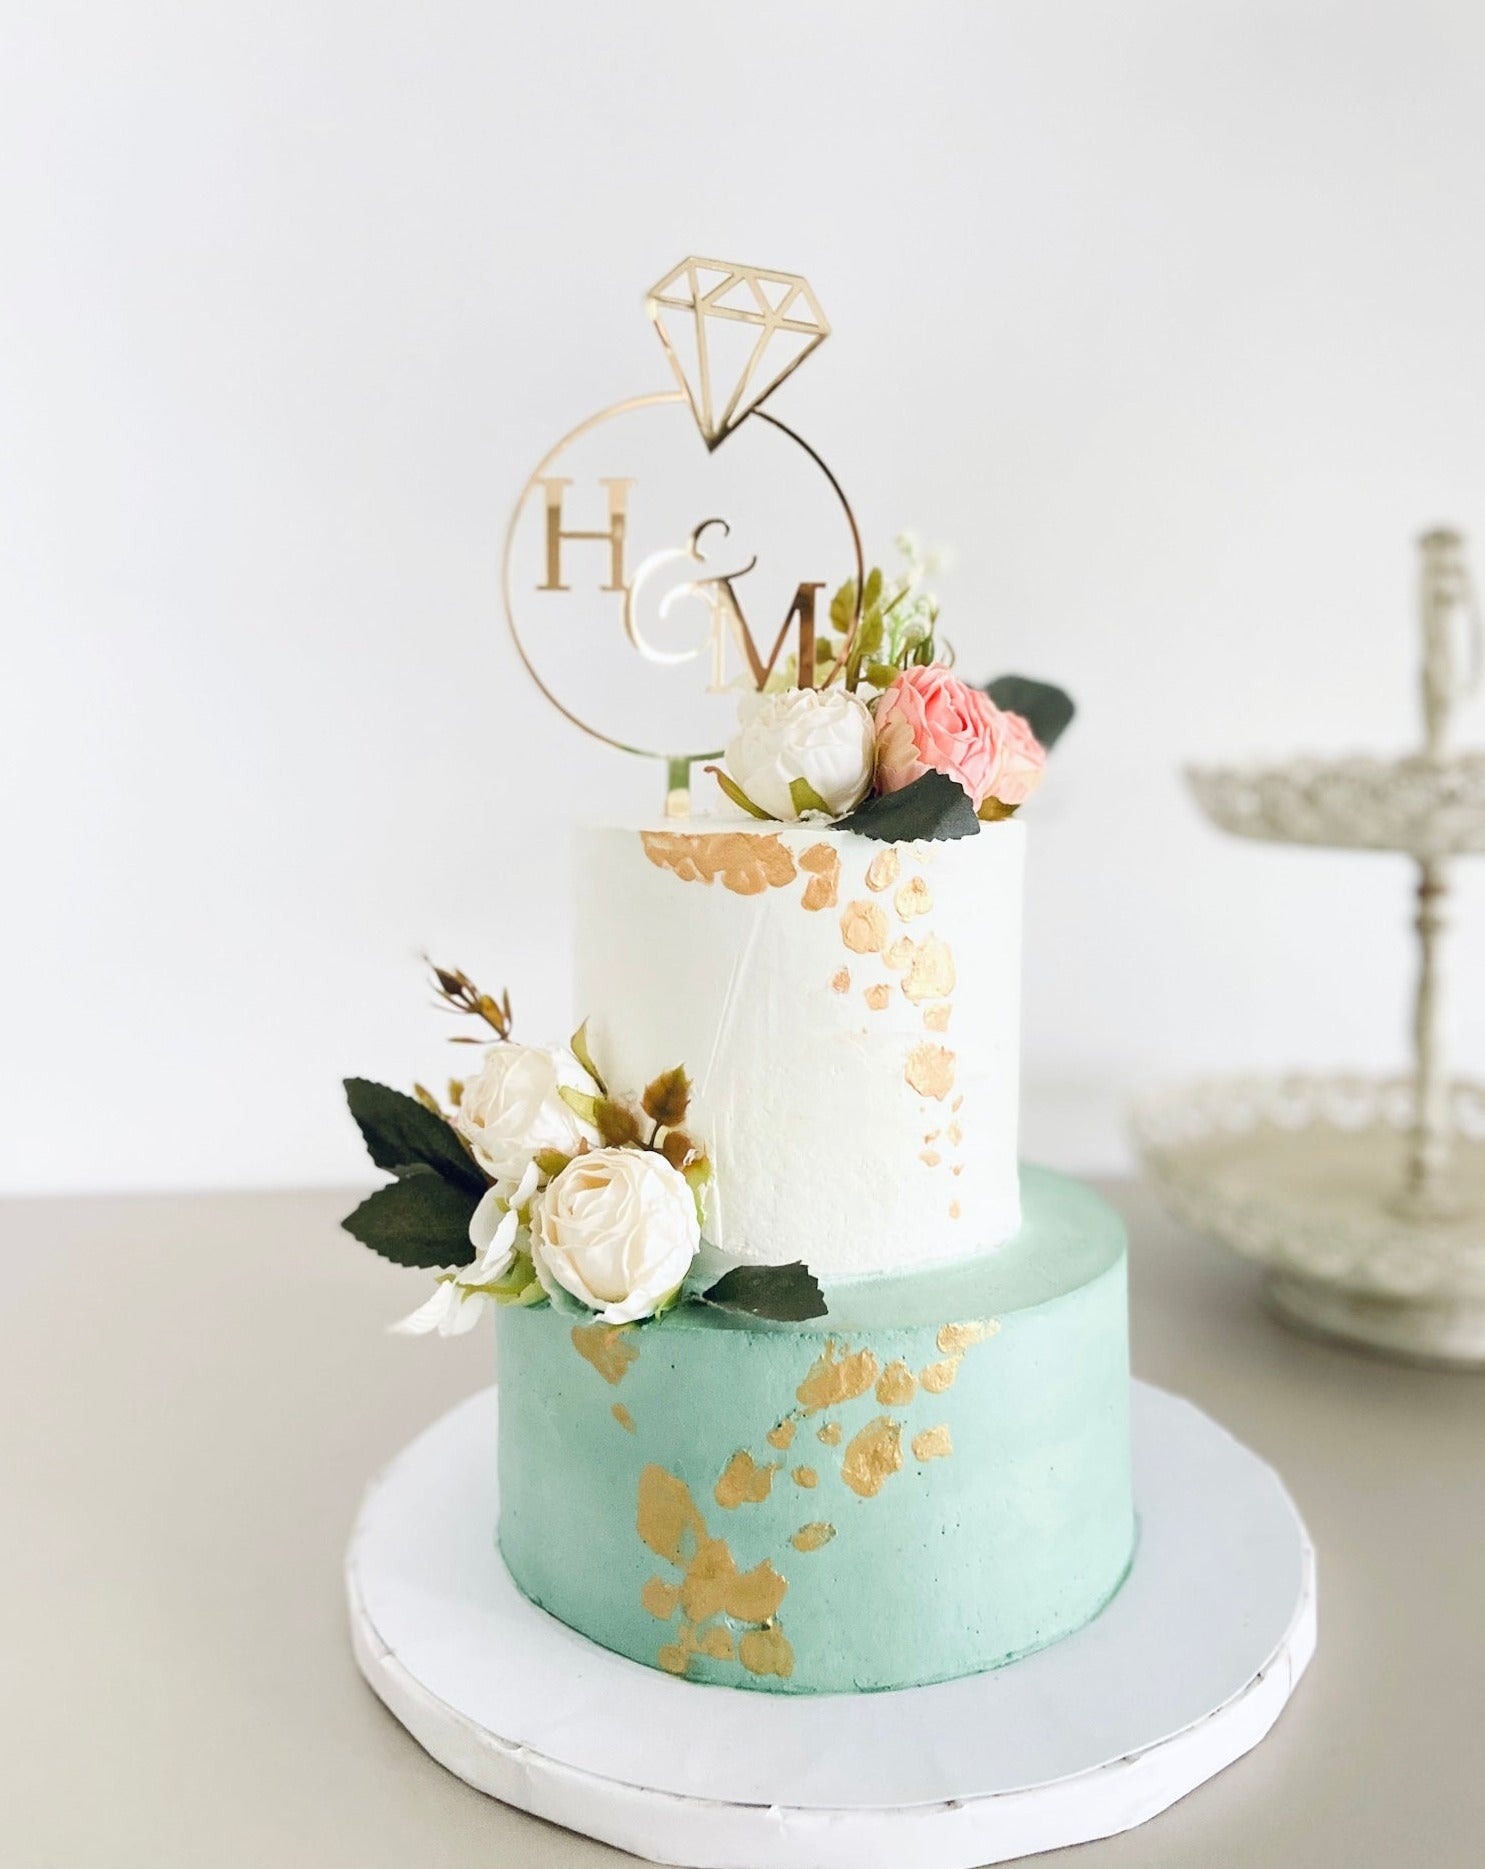 Engagement cake decoration - YouTube